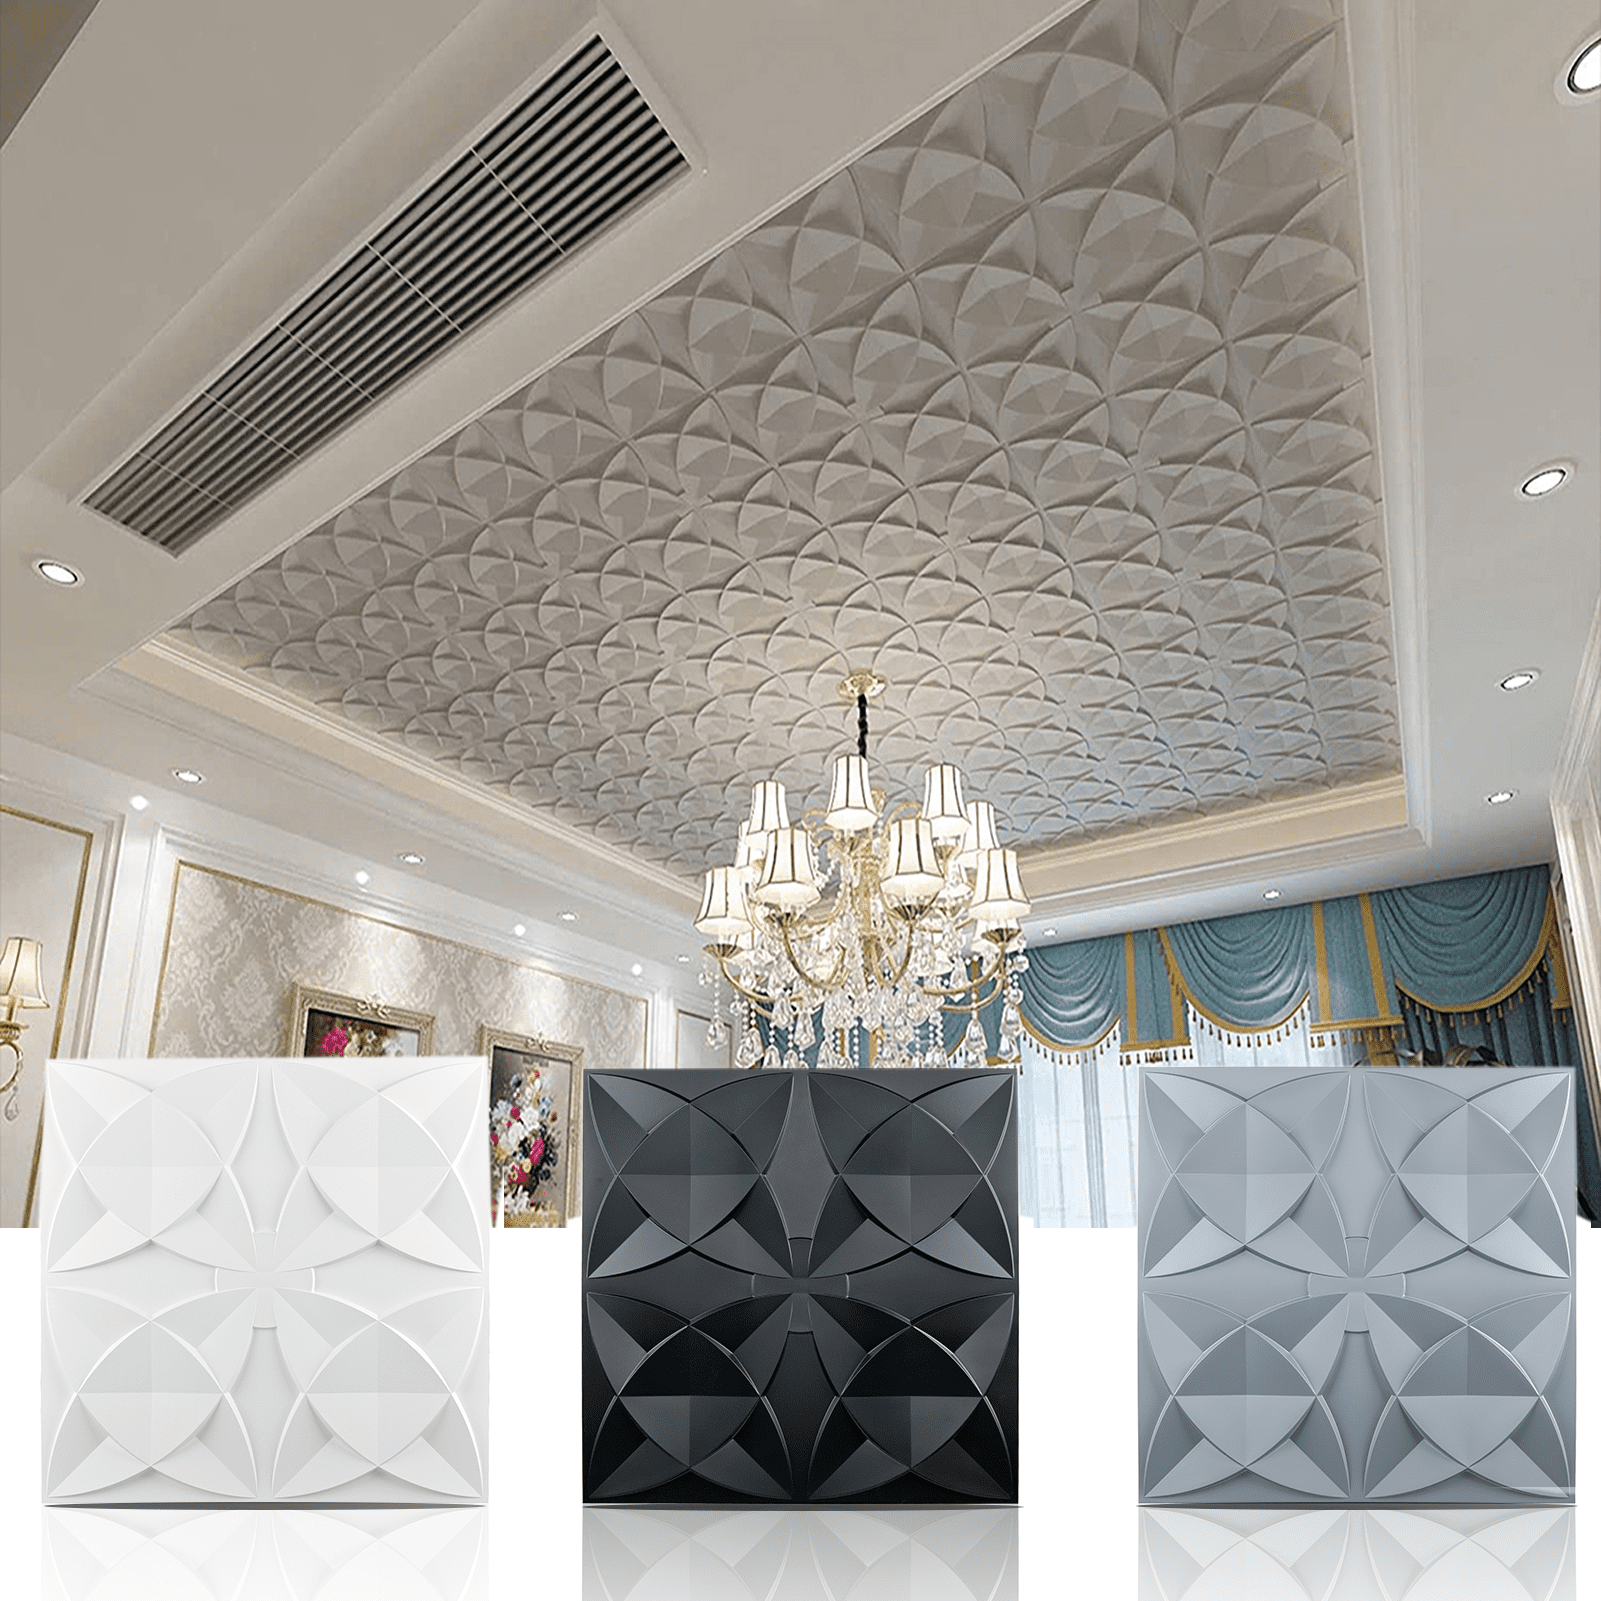 Art3d Ornamental Ceiling Tile 2x2 Glue up, Ceiling Tile Pack of 12pcs White  Flowers